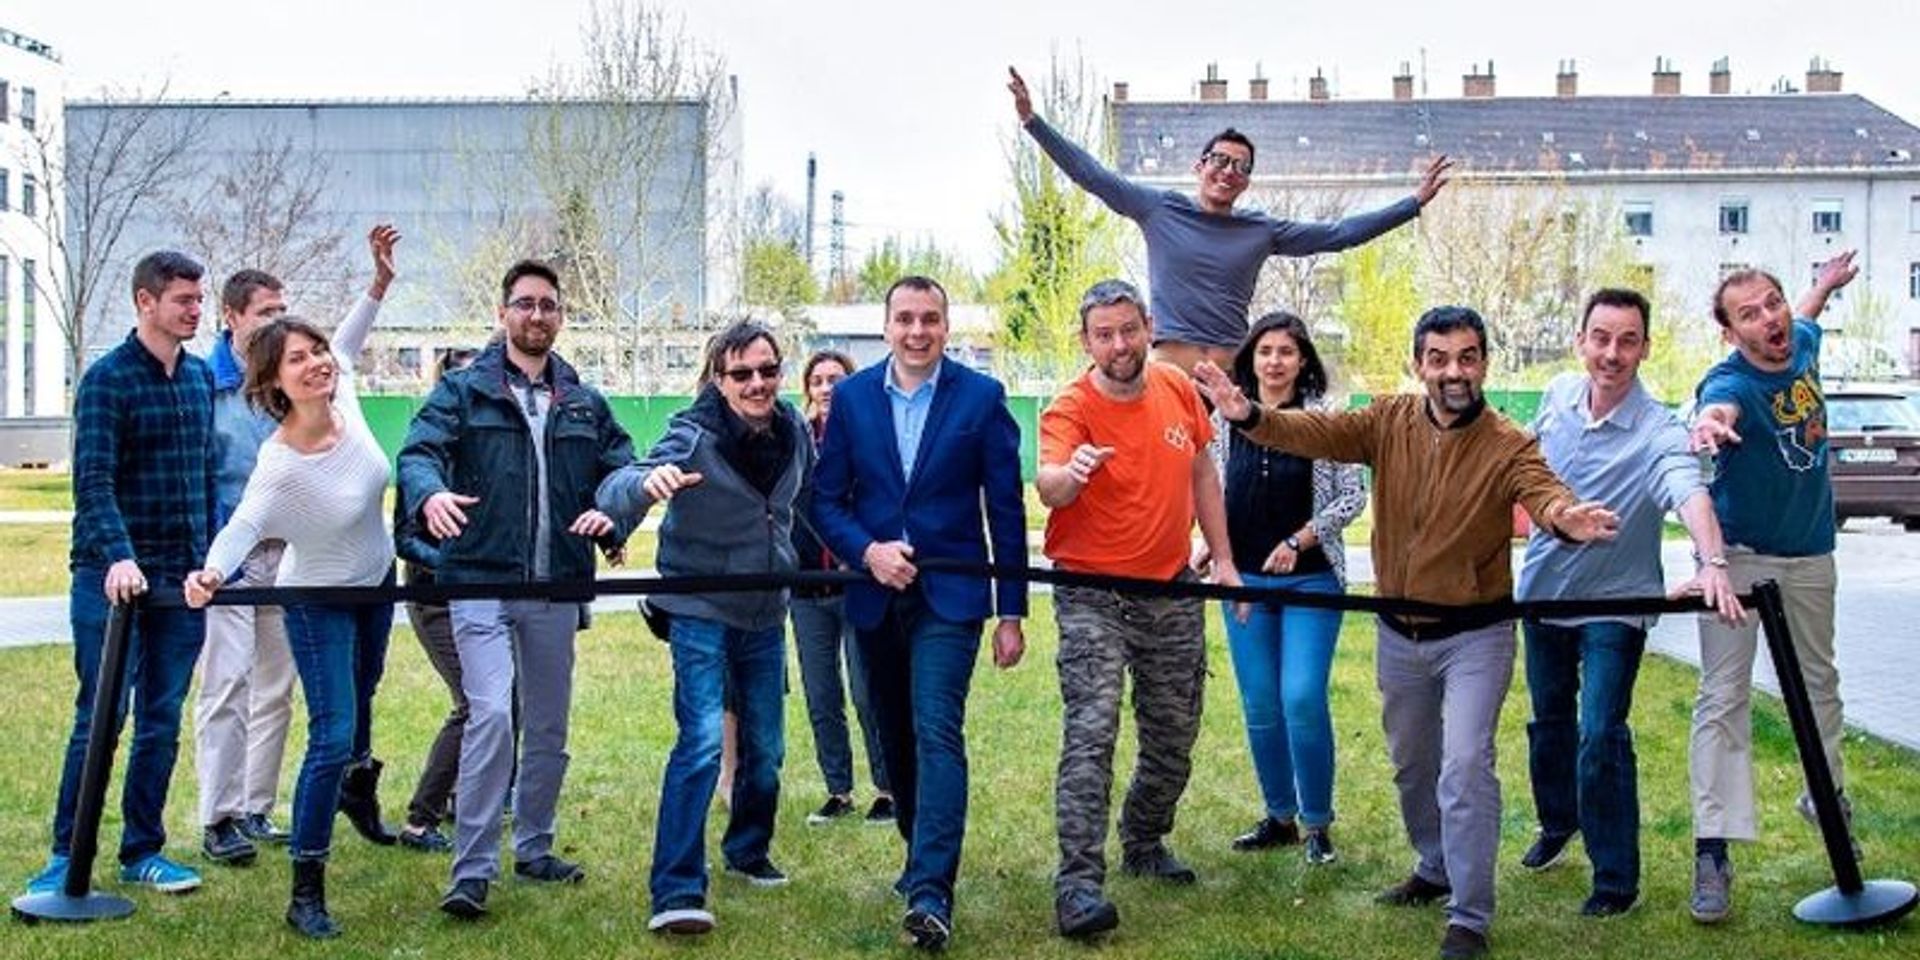 Virtuális sétával gyűlt össze több mint egymillió forint fogyatékos emberek támogatására